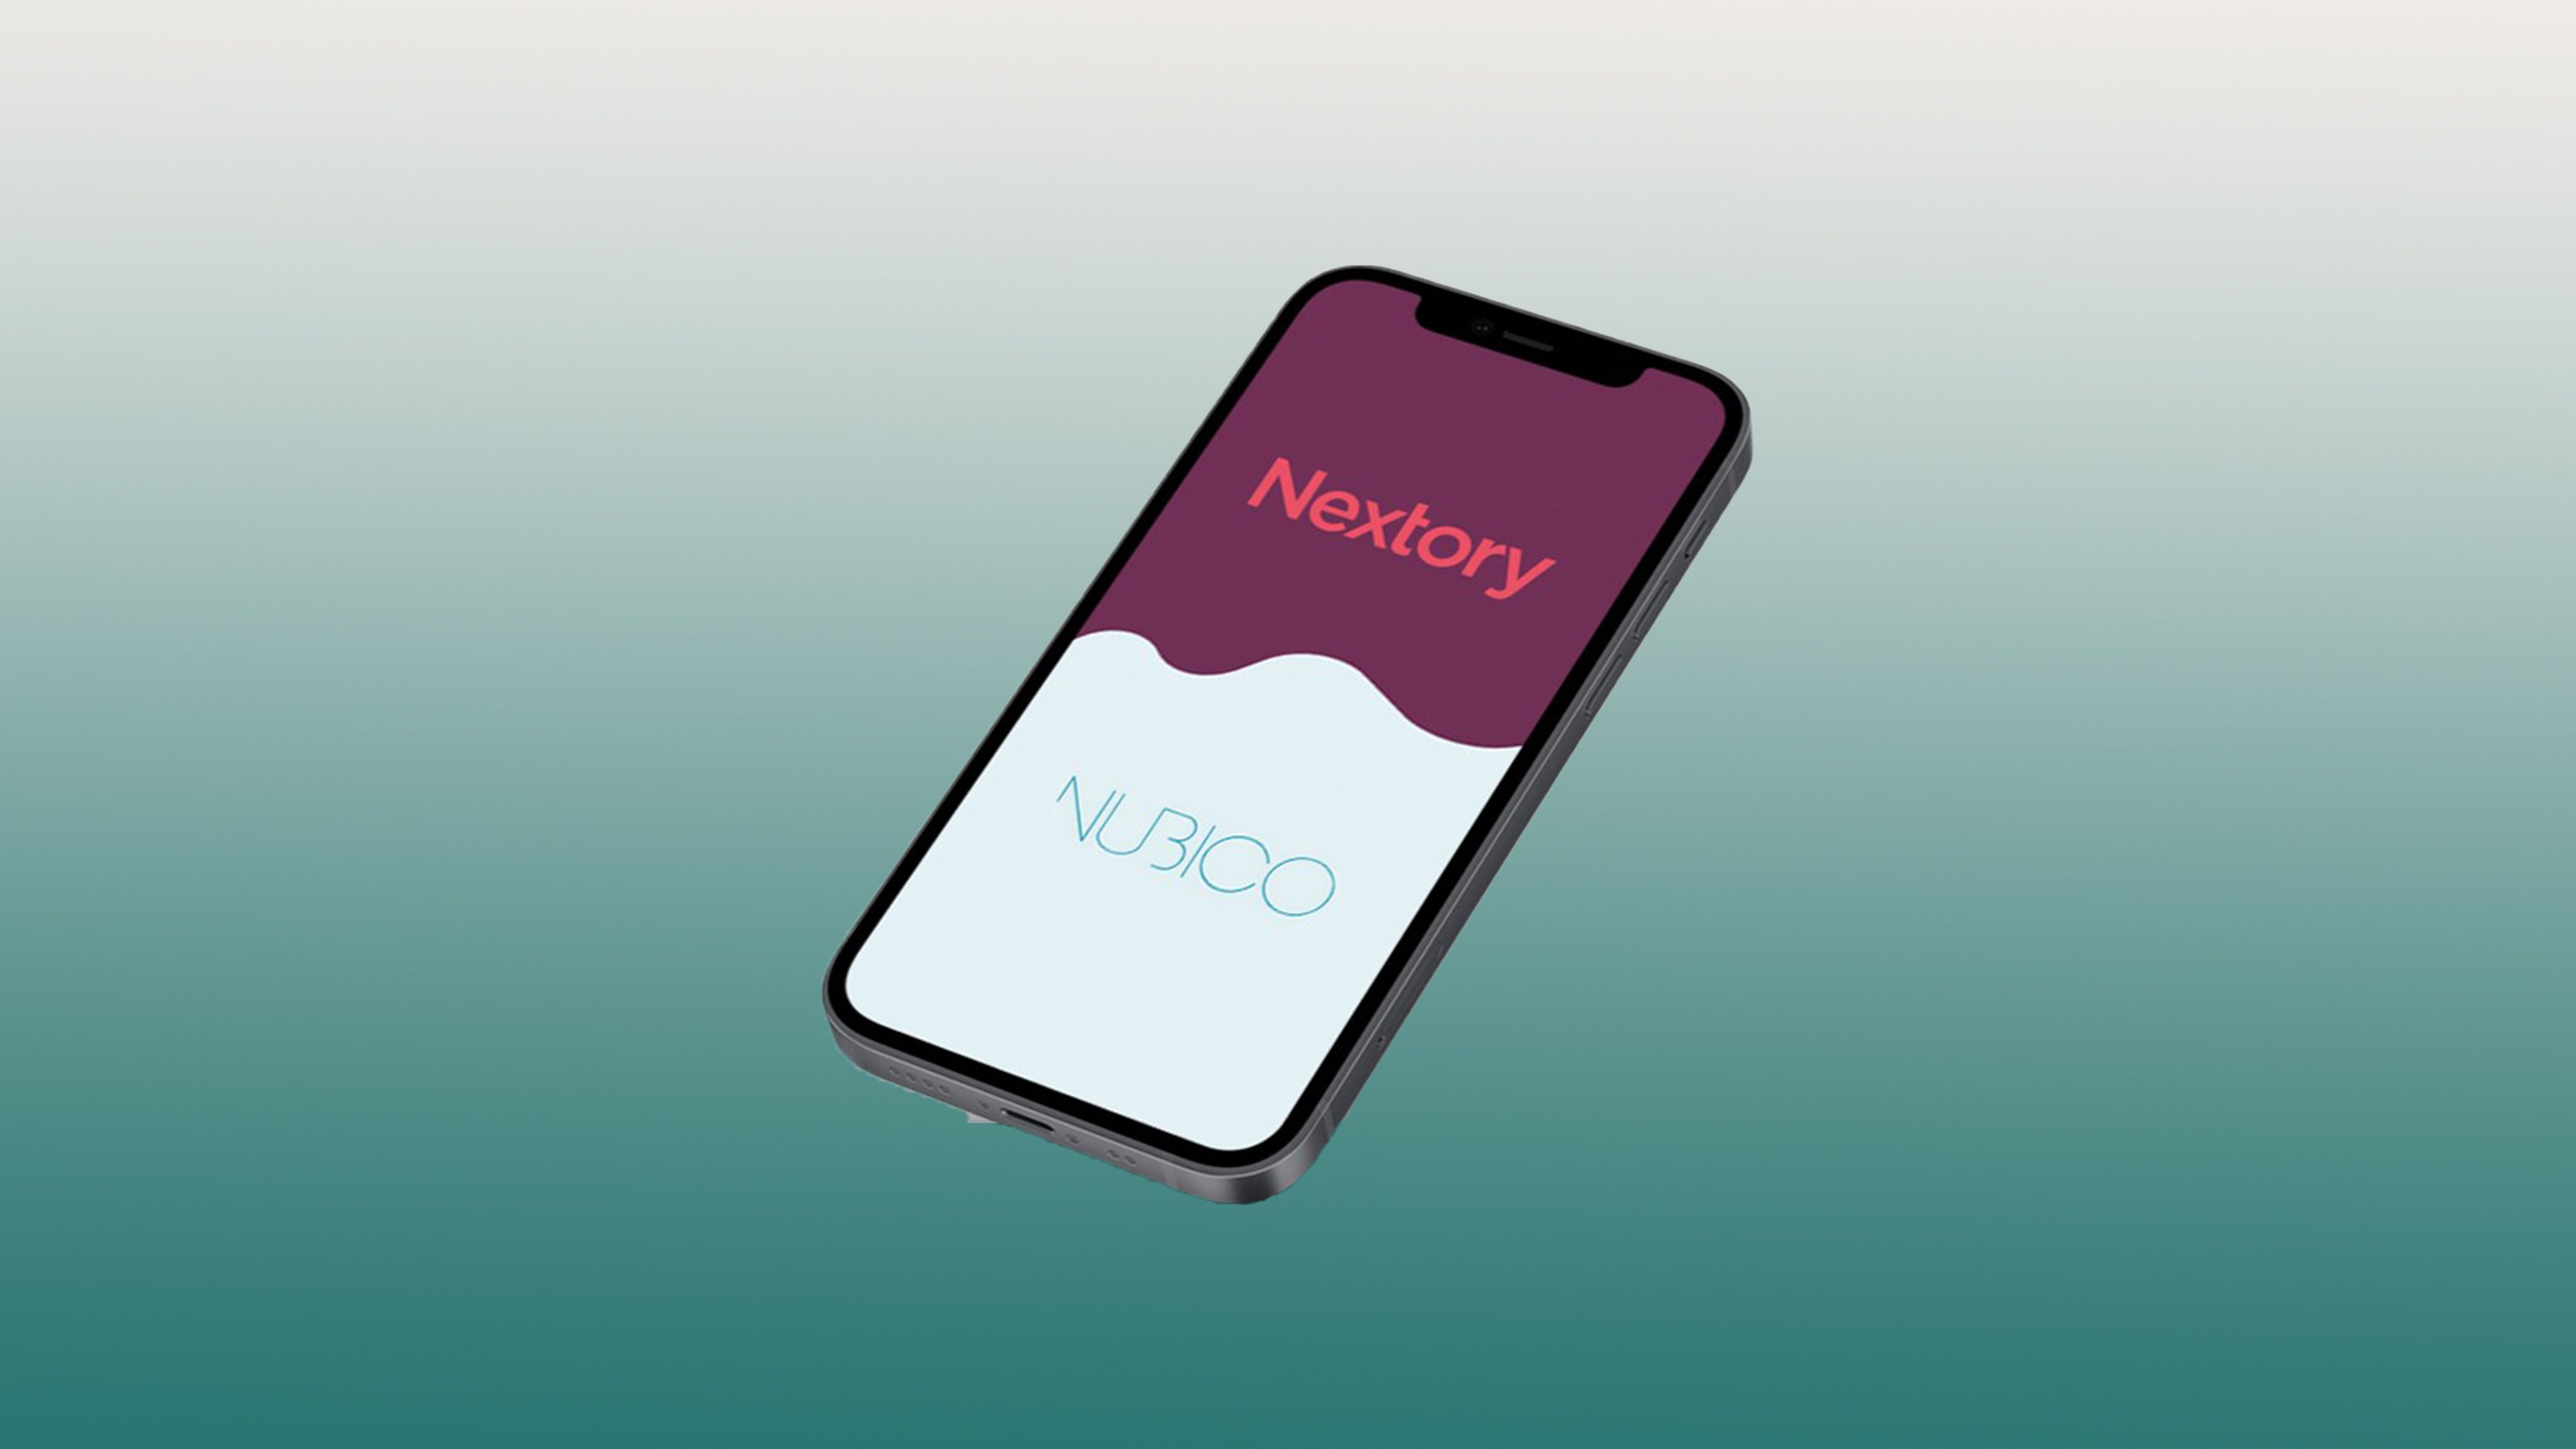 Nubico ahora es Nextory, así es el nuevo servicio de lectura digital y audiolibros